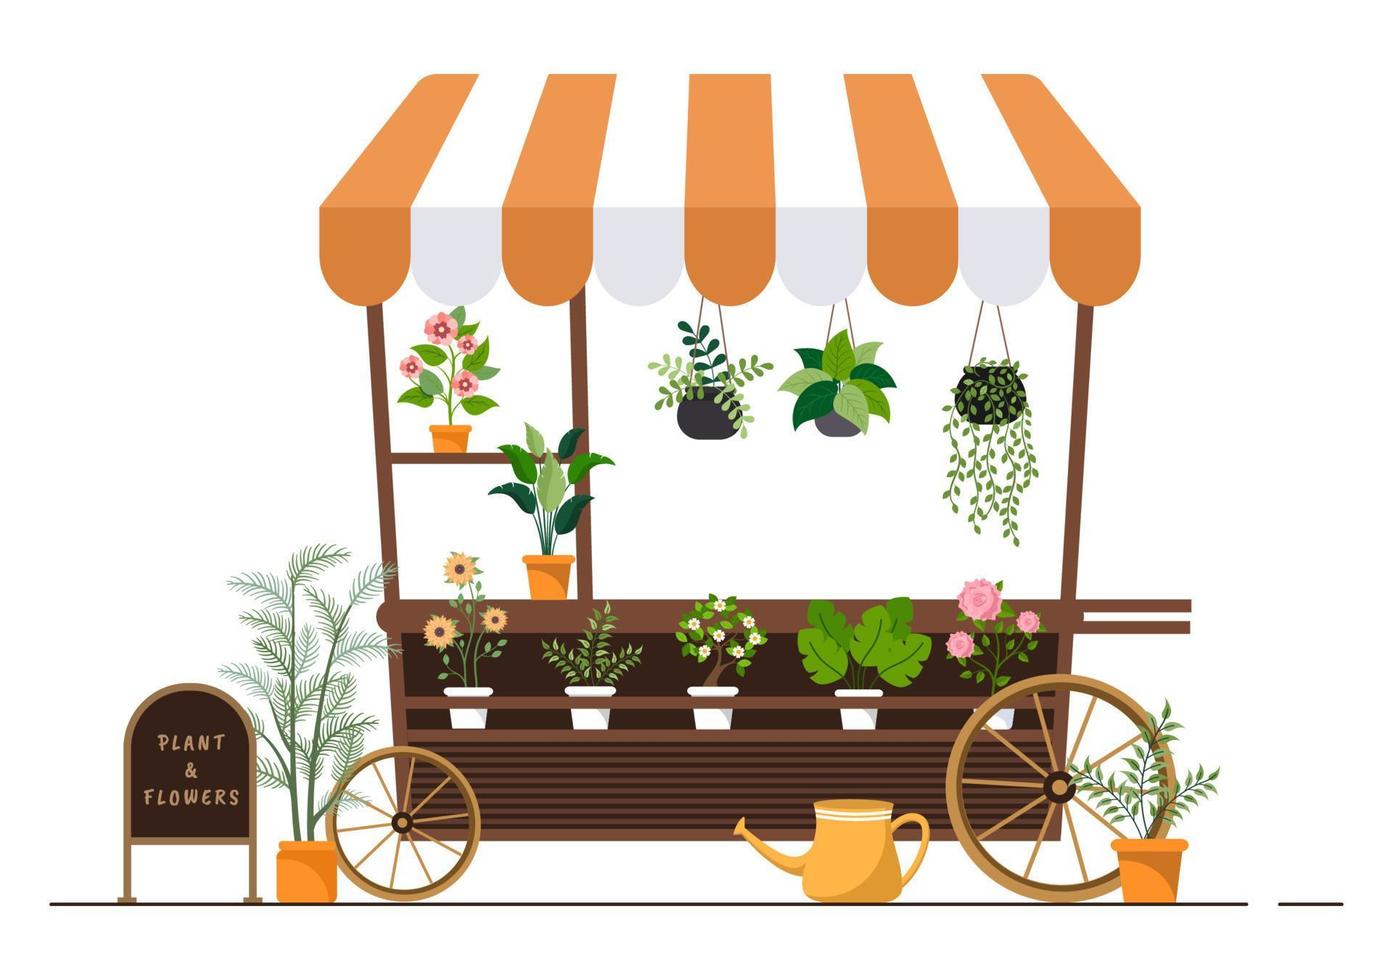 blomsterbutik och växtbutik med floristervård, ekologiska naturprodukter för hemträdgård grön dekoration i platt bakgrund vektorillustration vektor